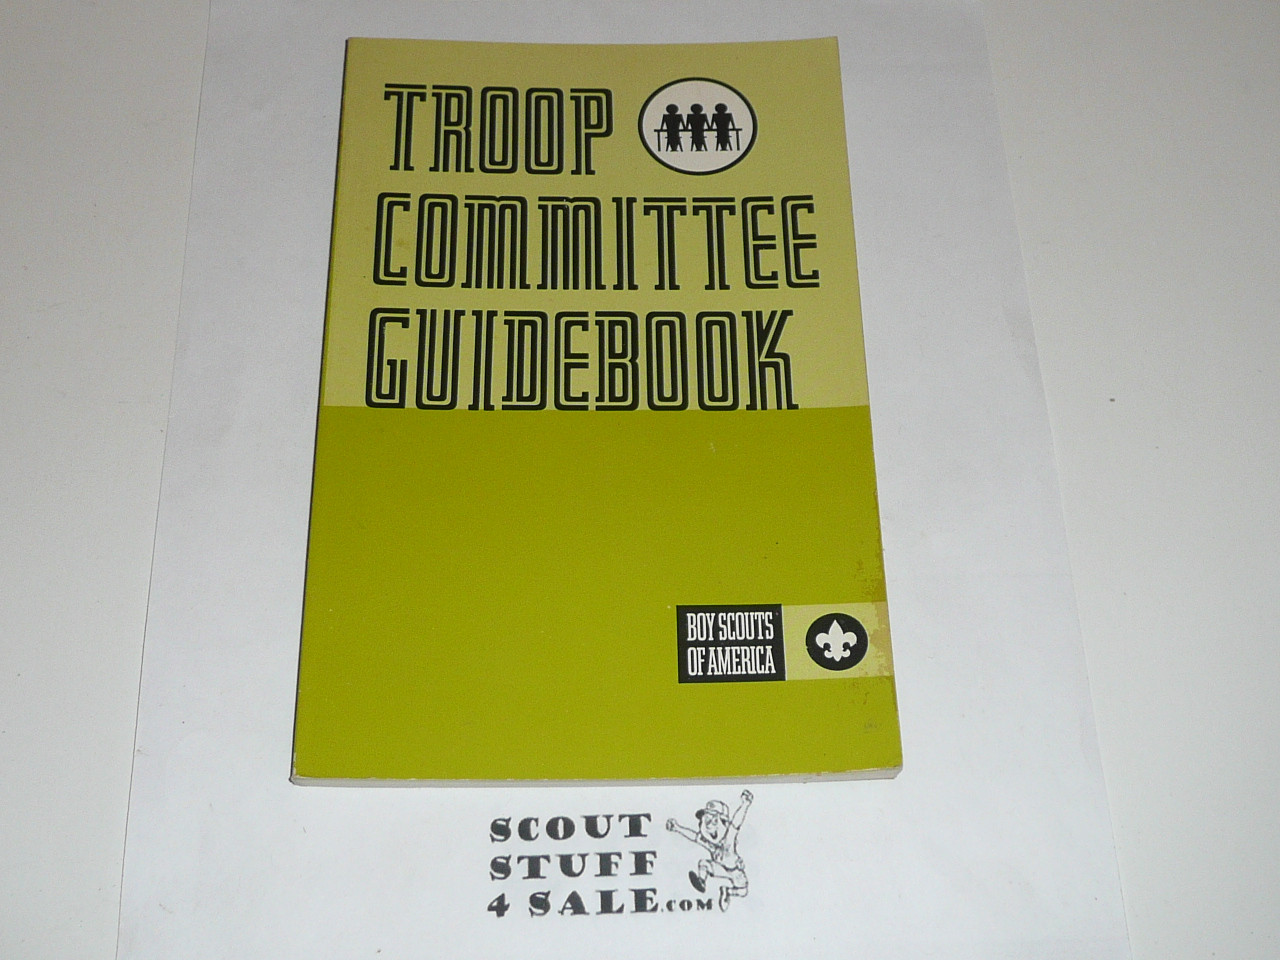 1983 Troop Committee Guidebook, 1983 printing, Very Good Condition